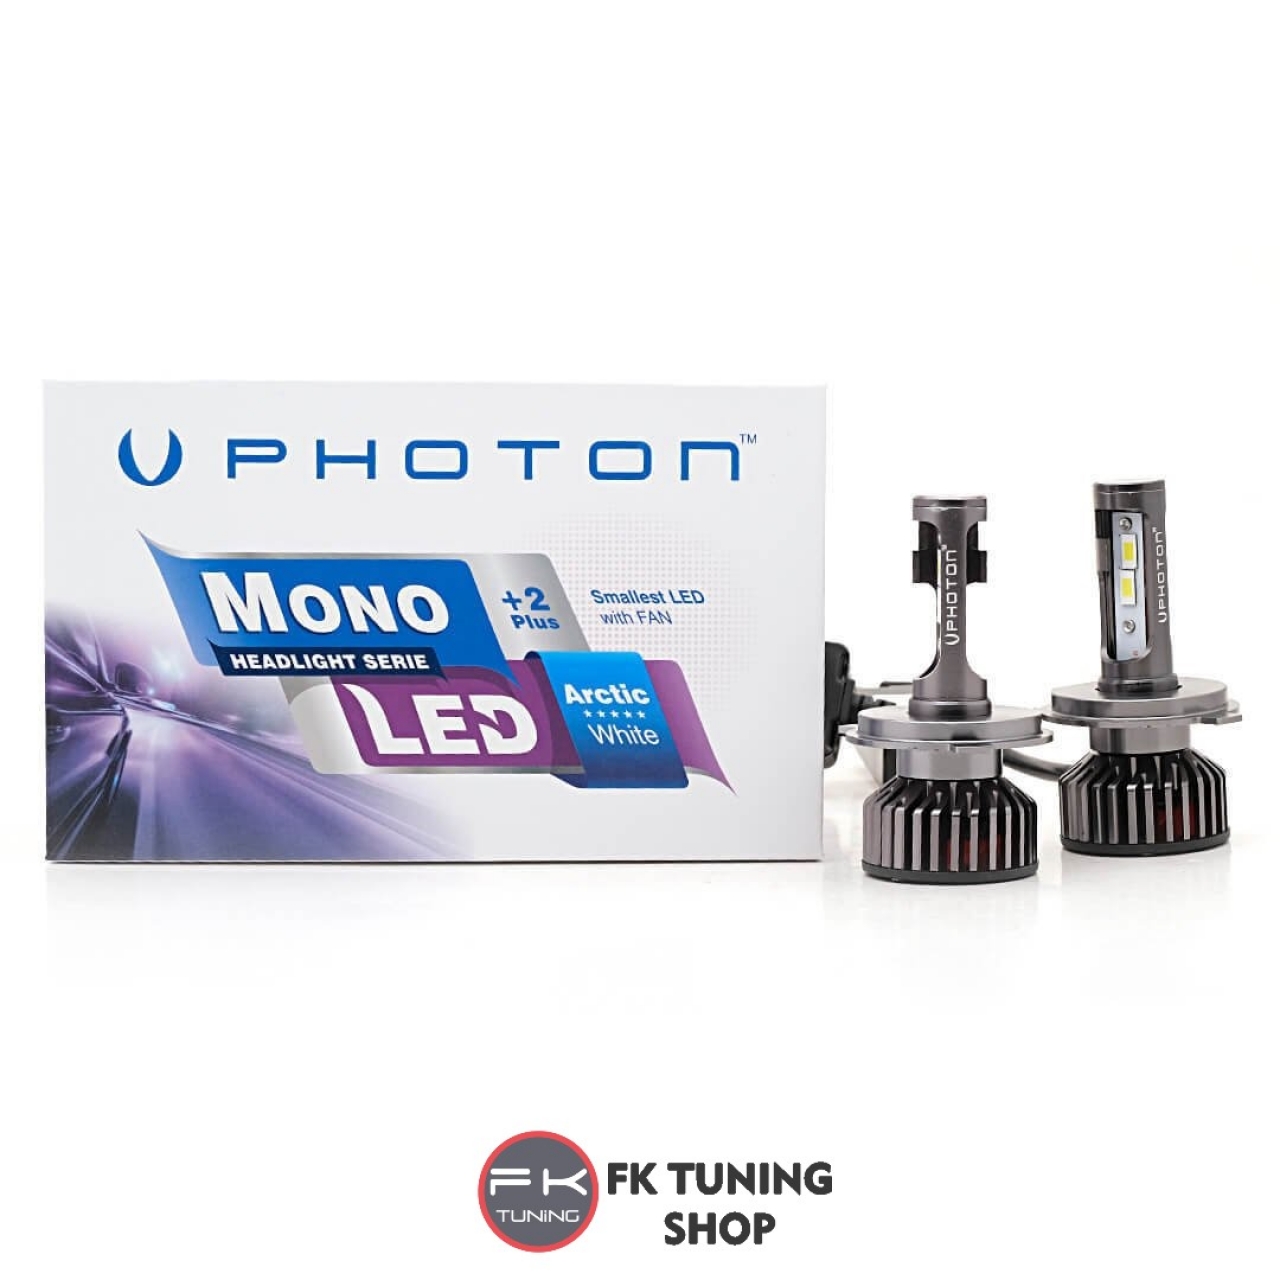 PHOTON H7 LED XENON MONO SERİSİ +2 Plus Serisi 